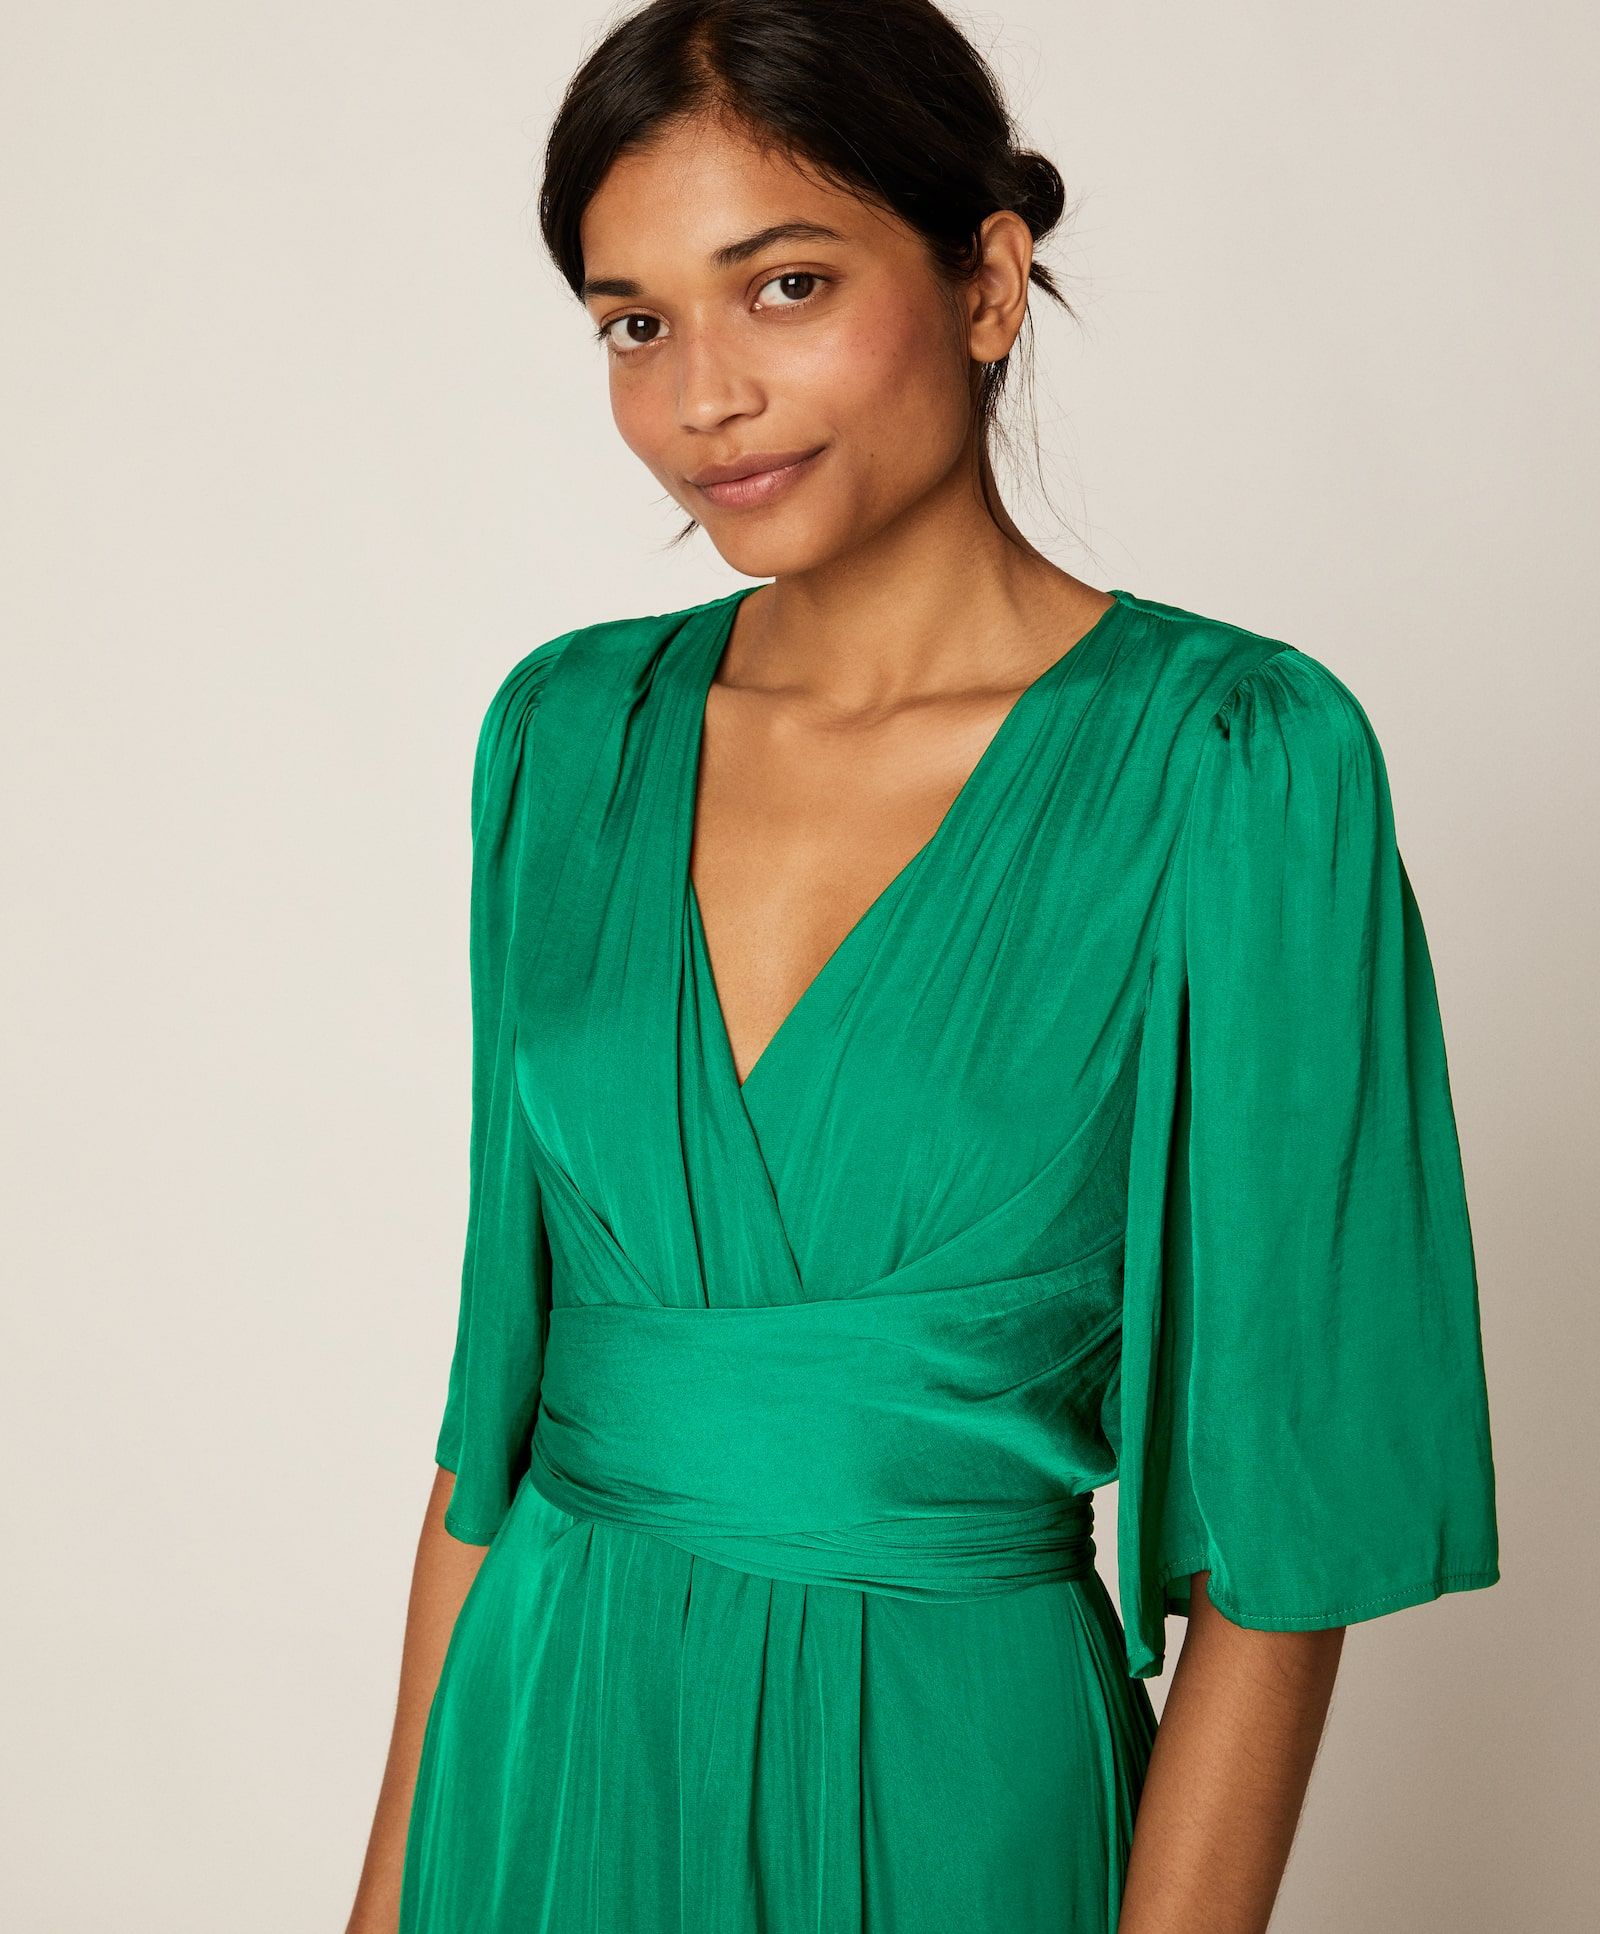 Oysho reedita su vestido verde de su tienda online